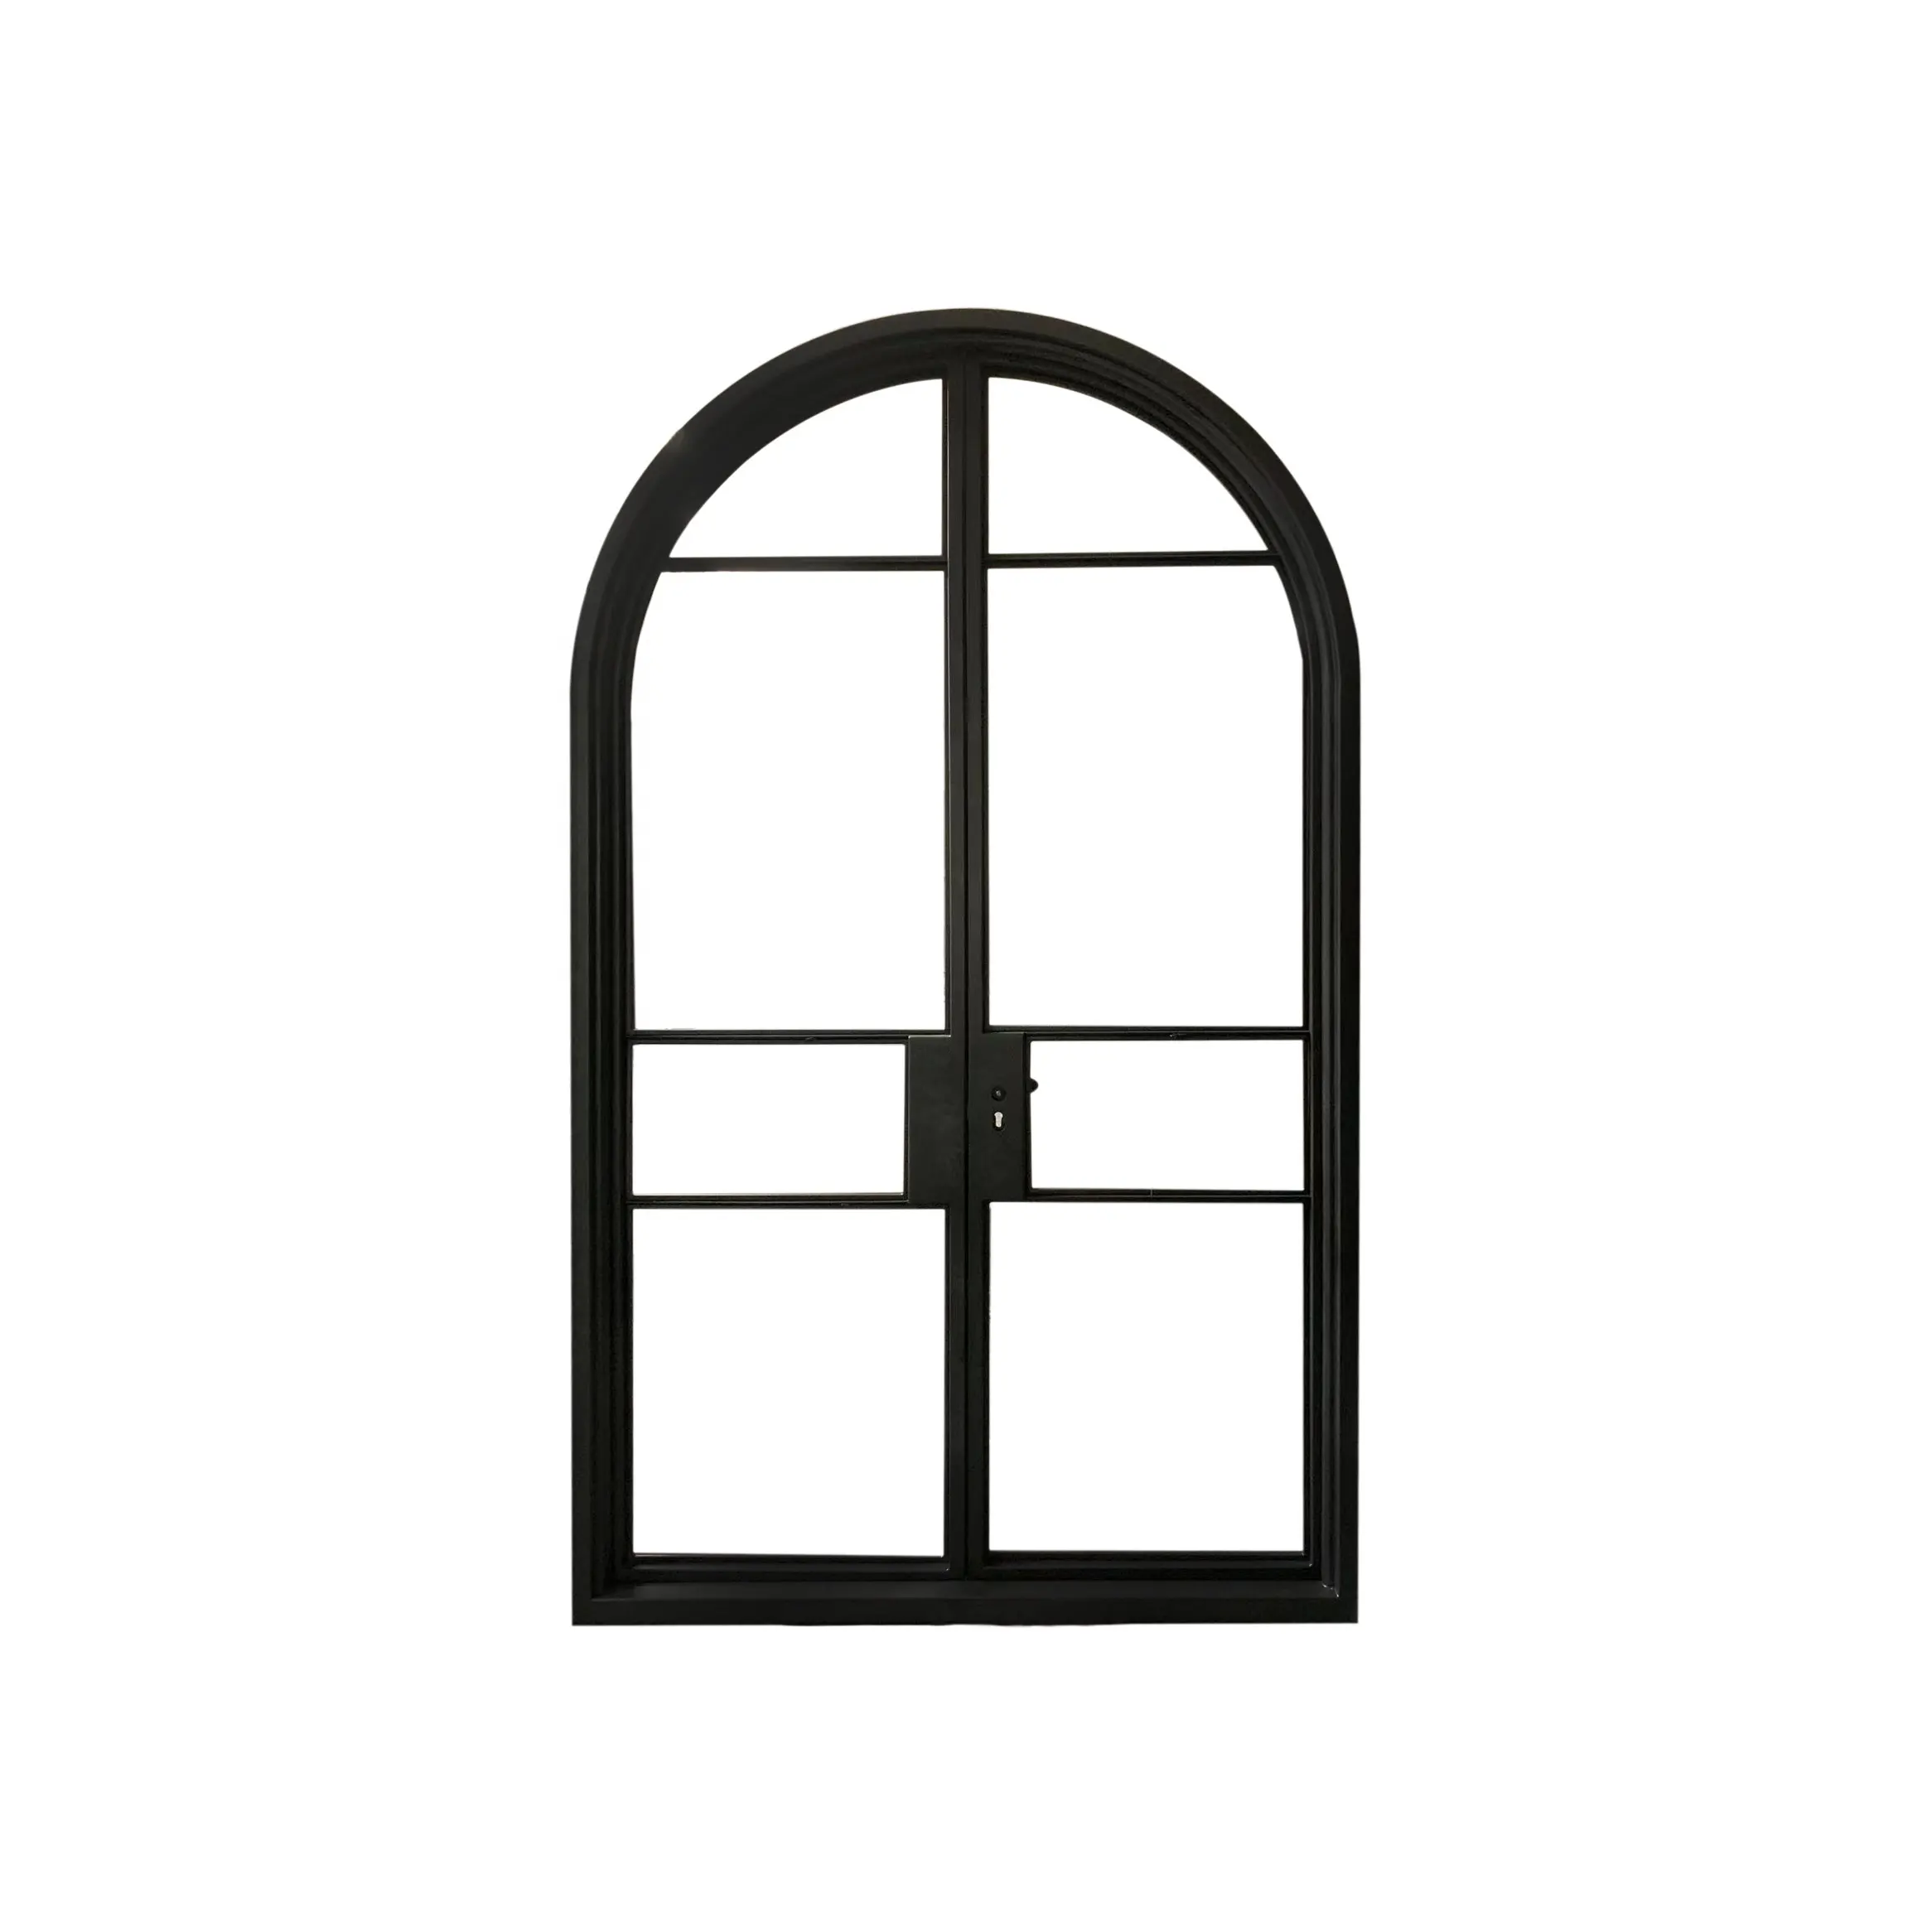 Puerta de vidrio de hierro forjado de estilo francés personalizada de gama alta, superventas, luz de lujo, entrada Interior privada personalizada